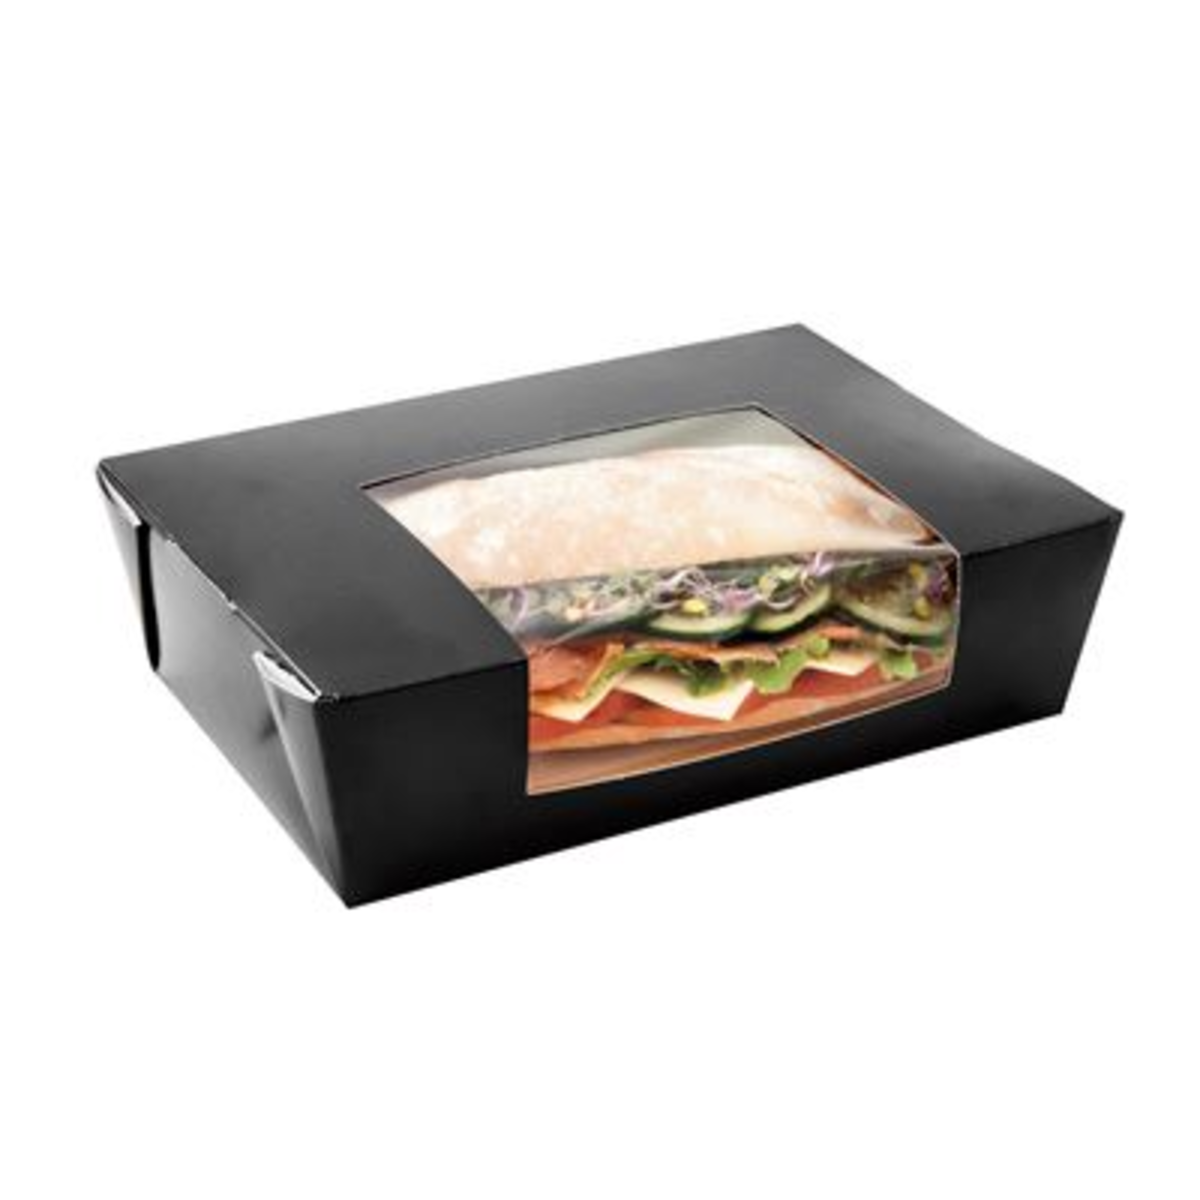 Boîte repas américaine avec fenêtre carton noir 6.5 x 15.2 x 12.1 cm x 300 Garcia de Pou - 216.69